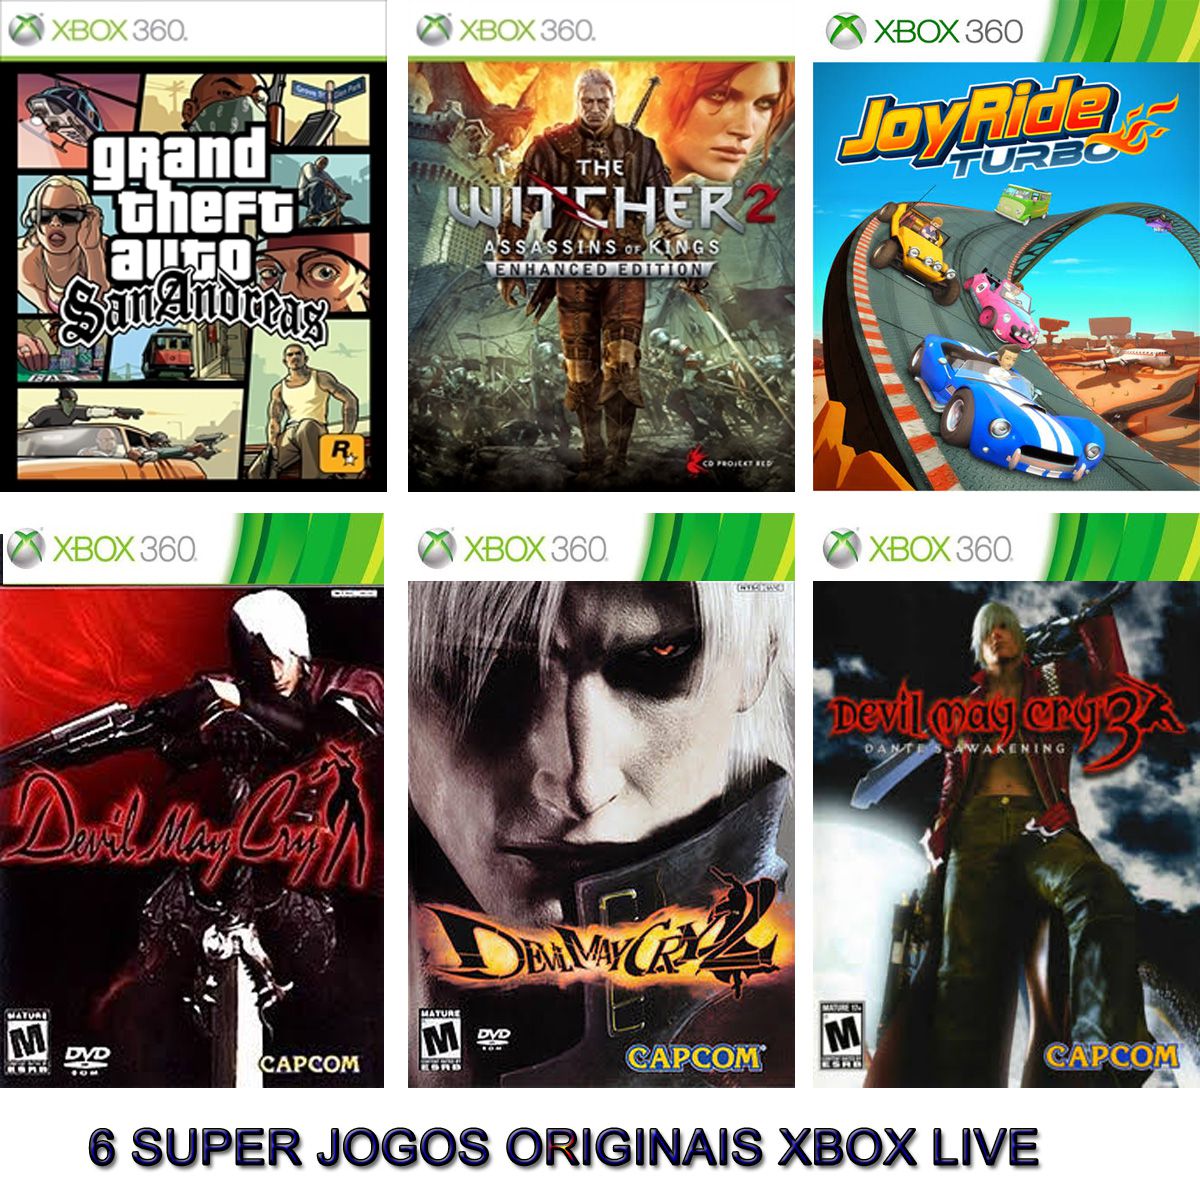 Jogos Xbox 360 transferência de Licença Mídia Digital - GTA SAN ANDREAS